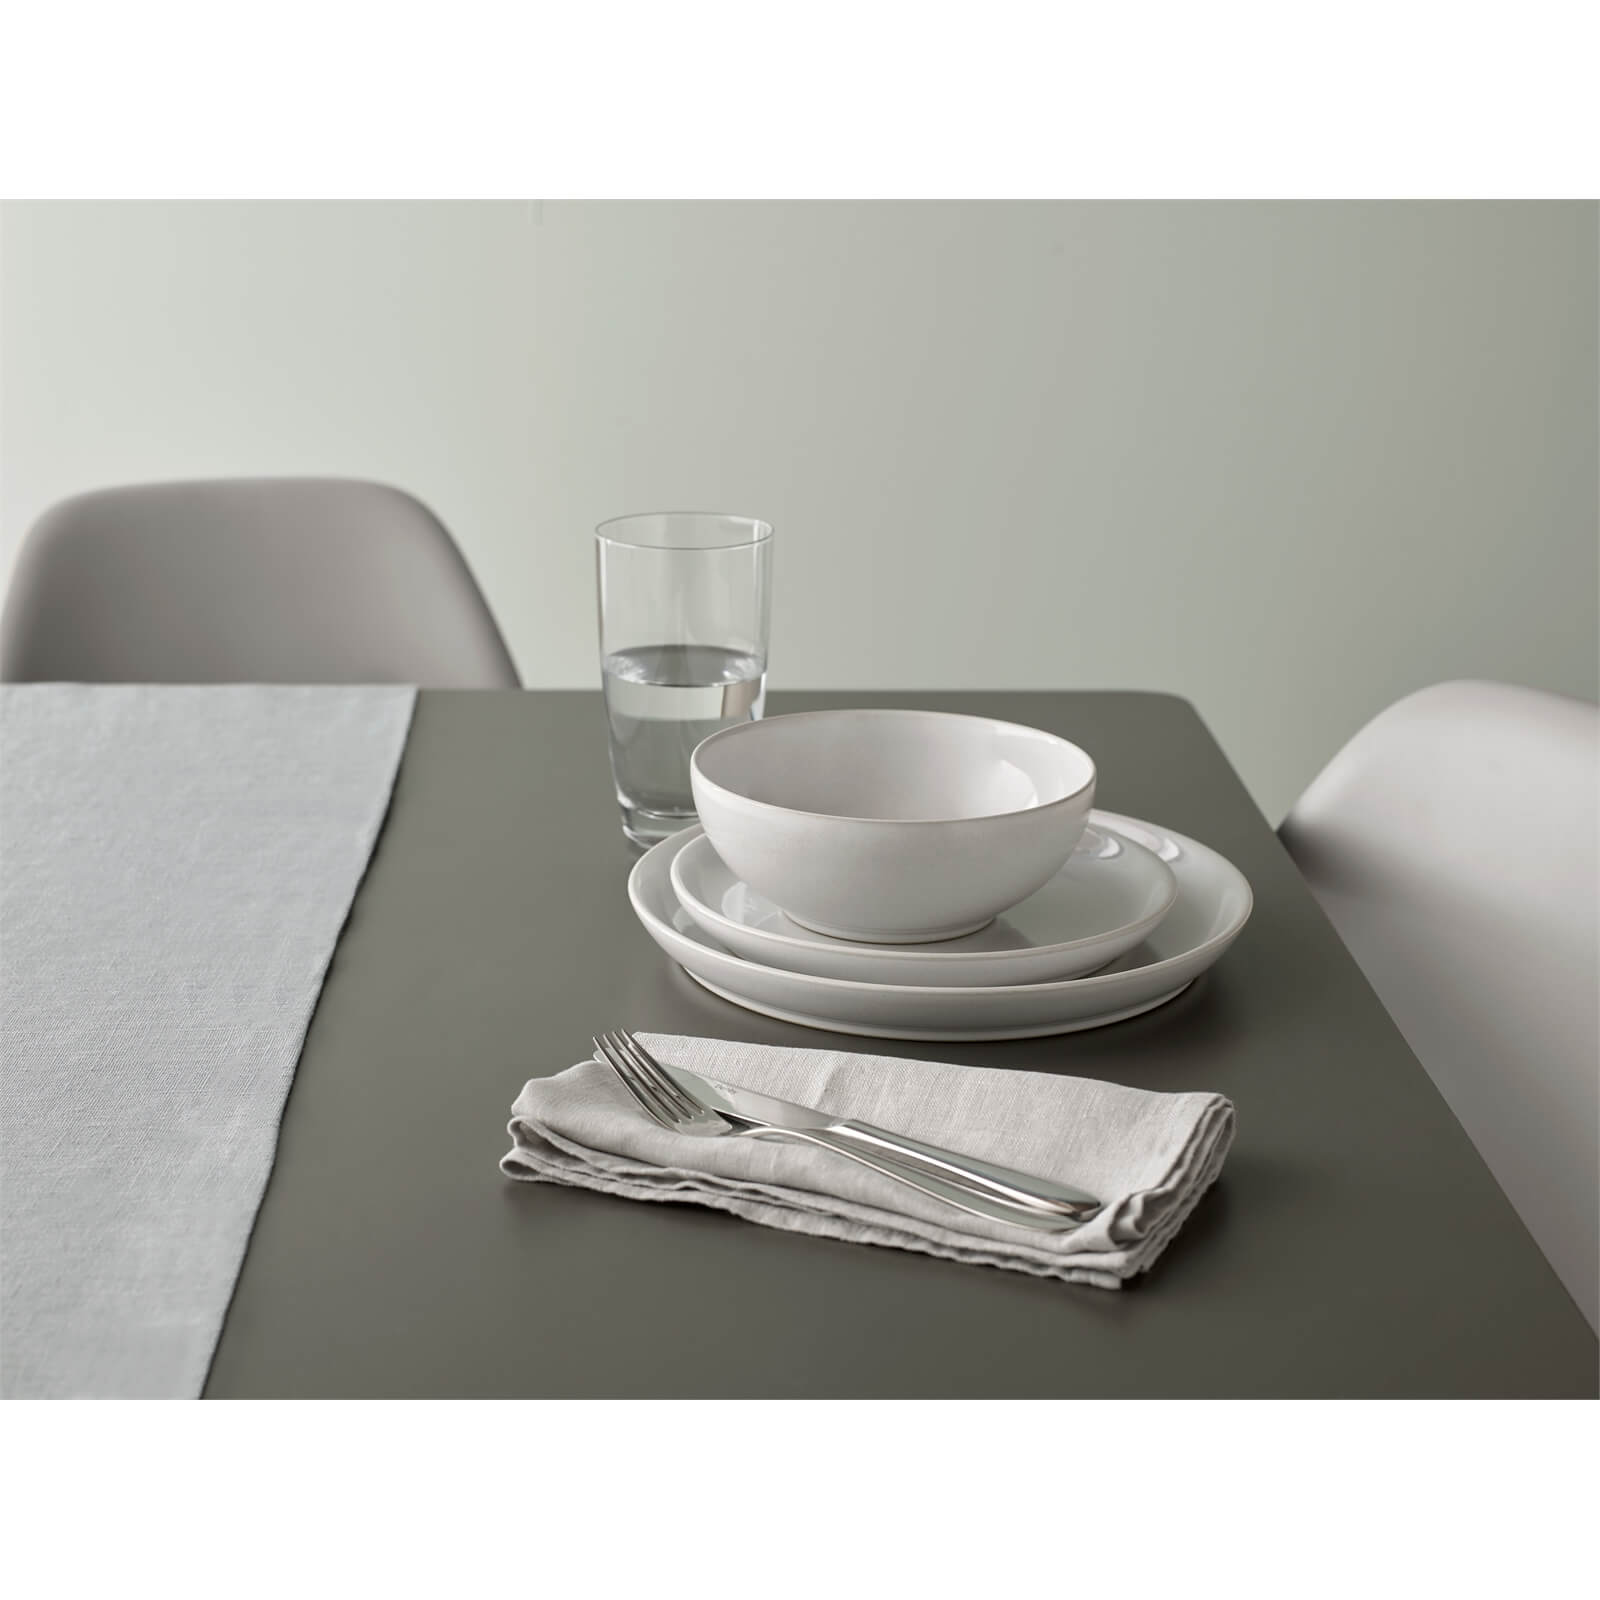 Denby Intro 12 Piece Tableware Set - Stone White